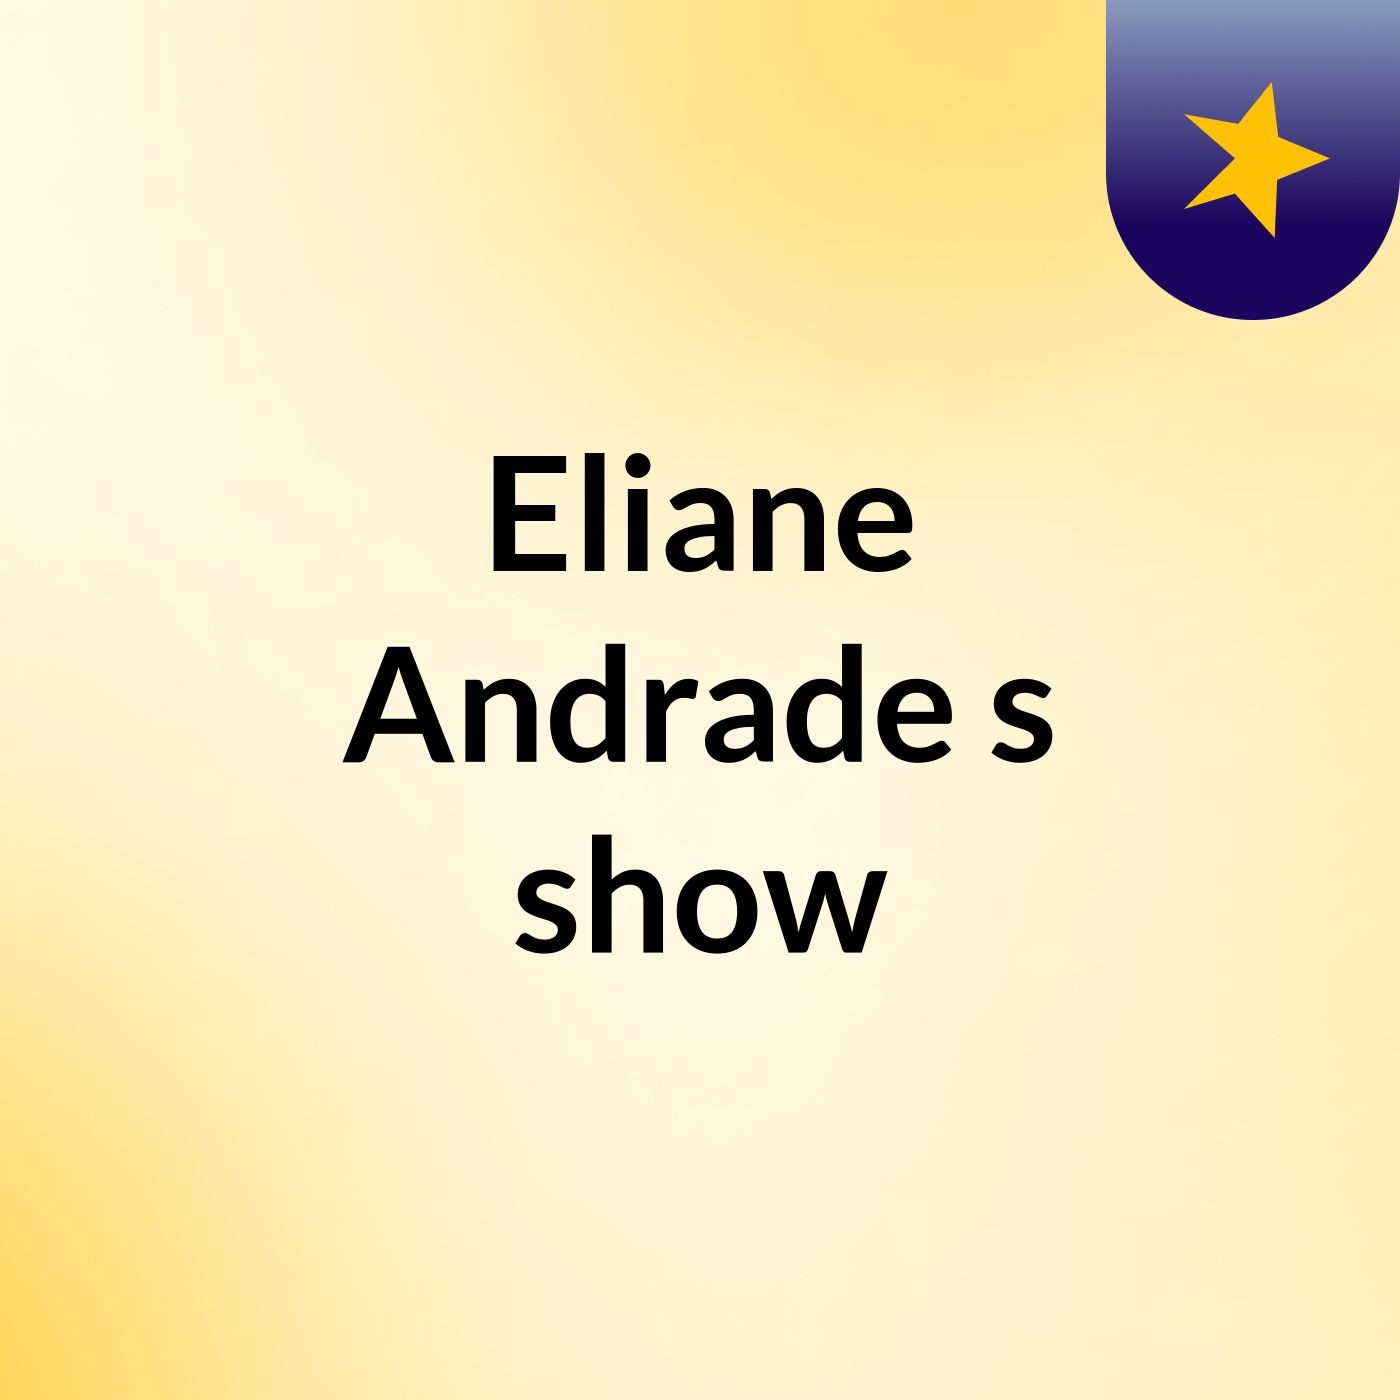 Eliane Andrade's show